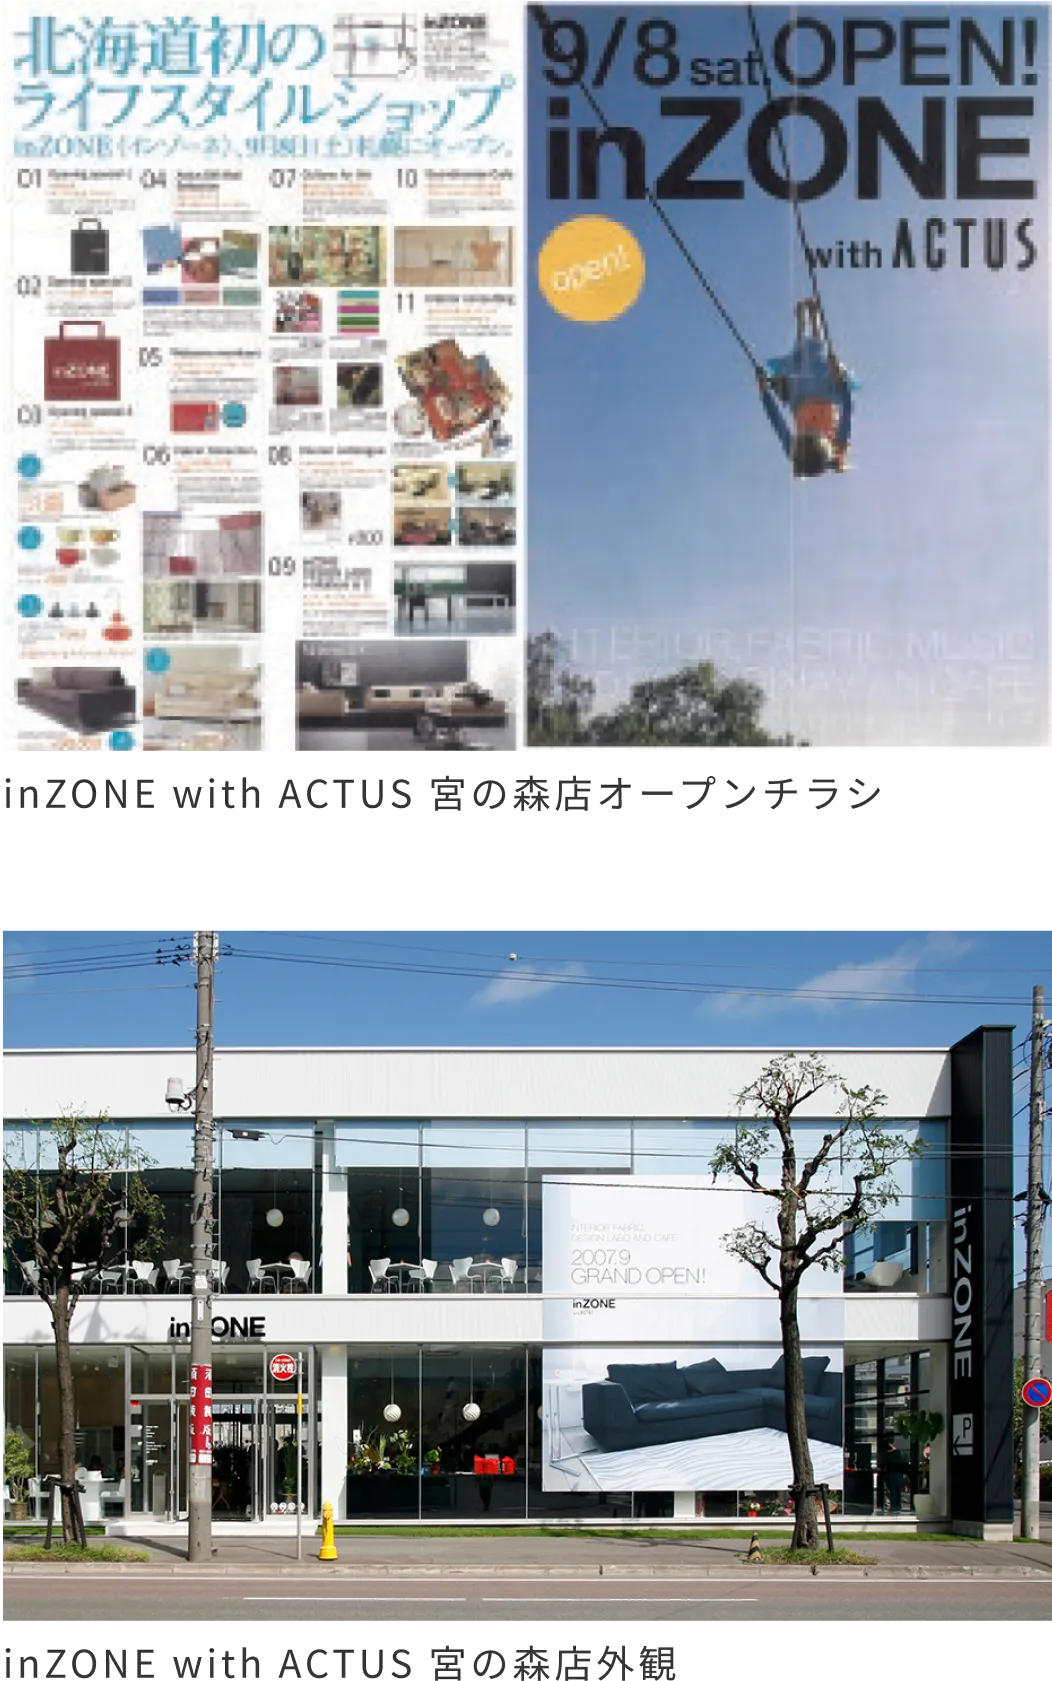 inZONE with ACTUS 宮の森店オープンチラシ/inZONE with ACTUS 宮の森店外観